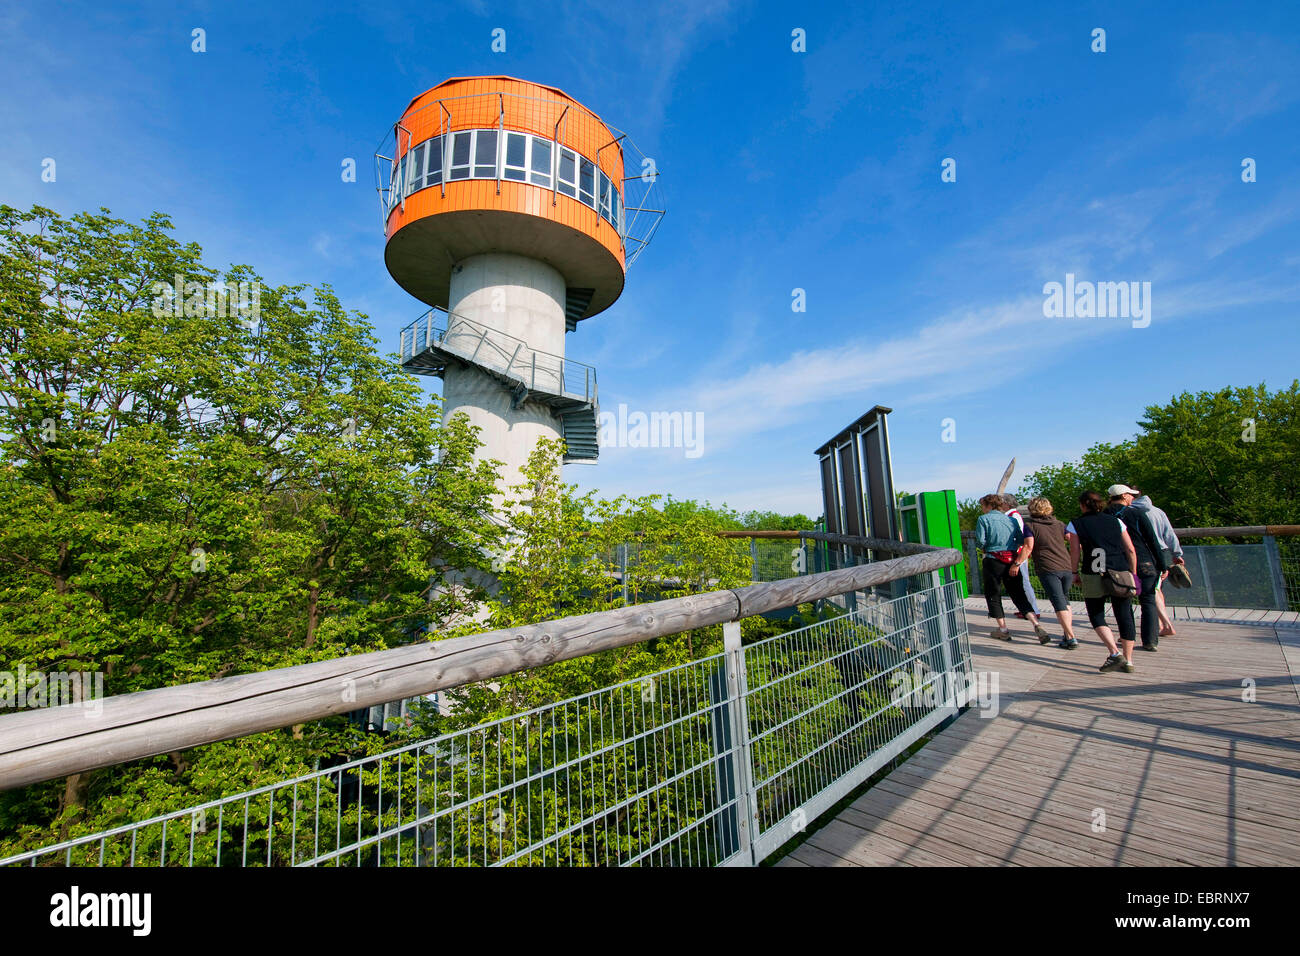 Überdachunggehweg mit Turm und Besucher, Deutschland, Nationalpark Hainich anzeigen Stockfoto